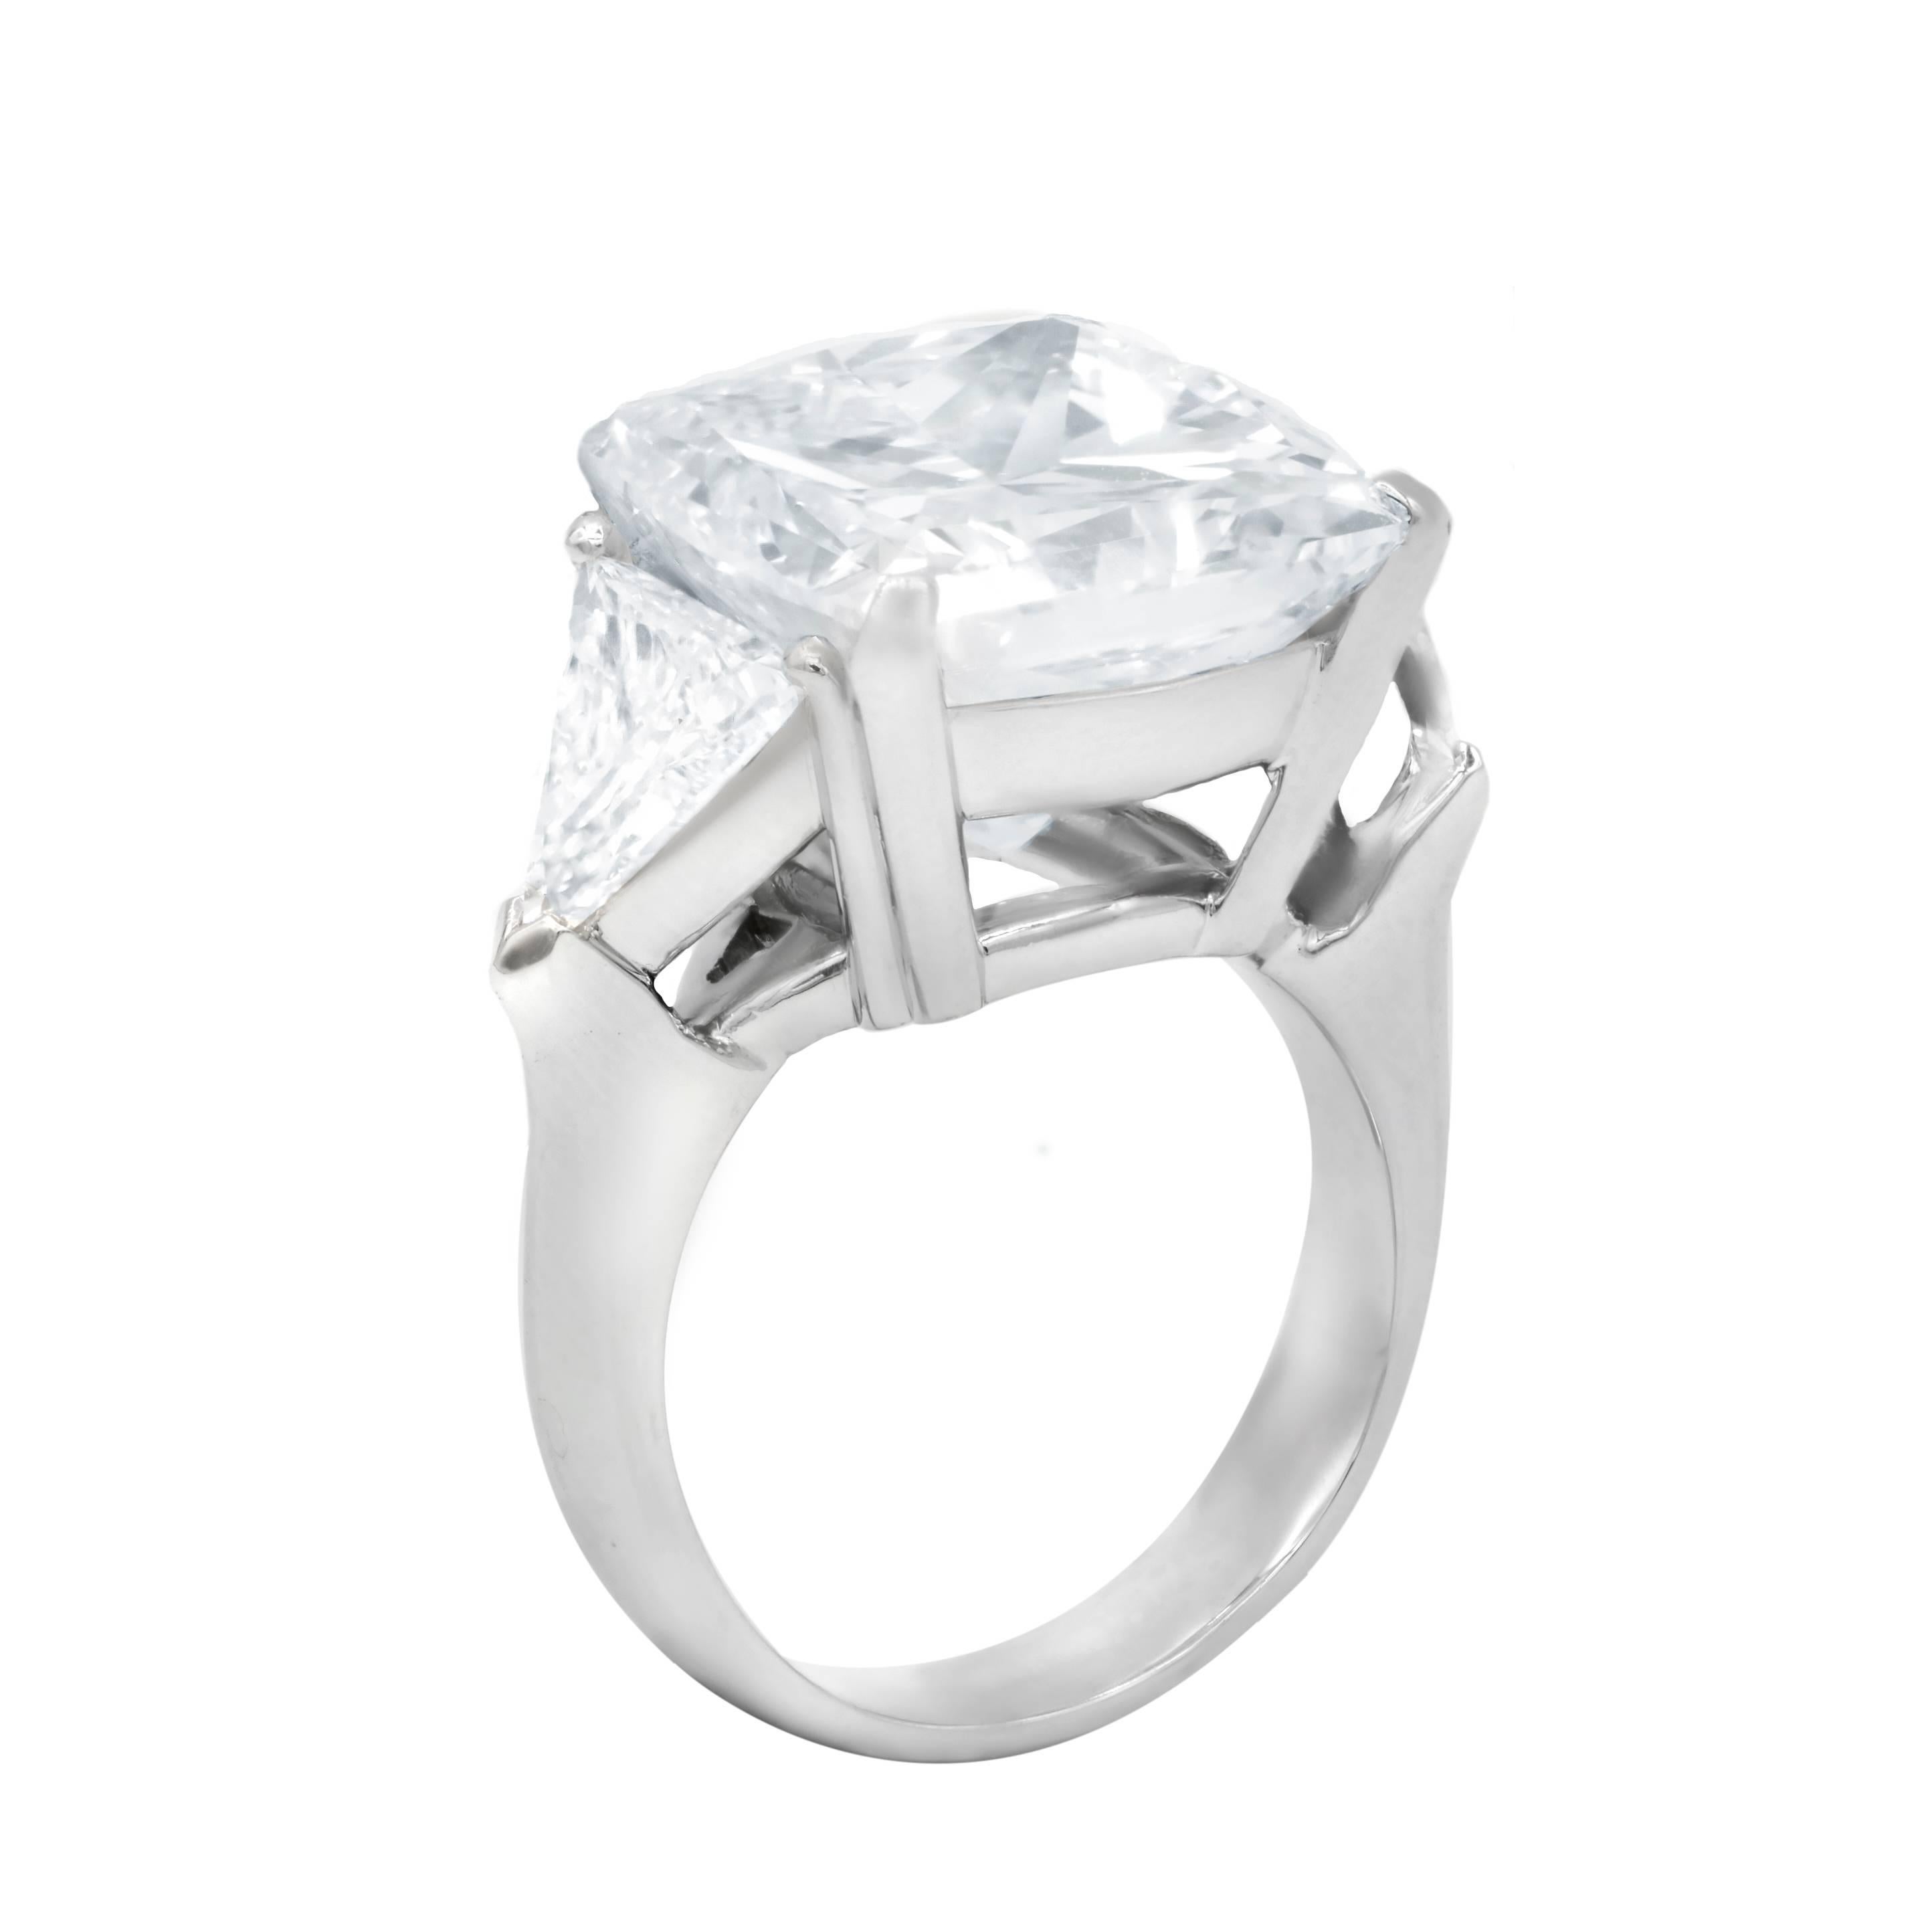 Women's or Men's GIA Certified 13.73 Carat Radiant Cut Diamond Ring